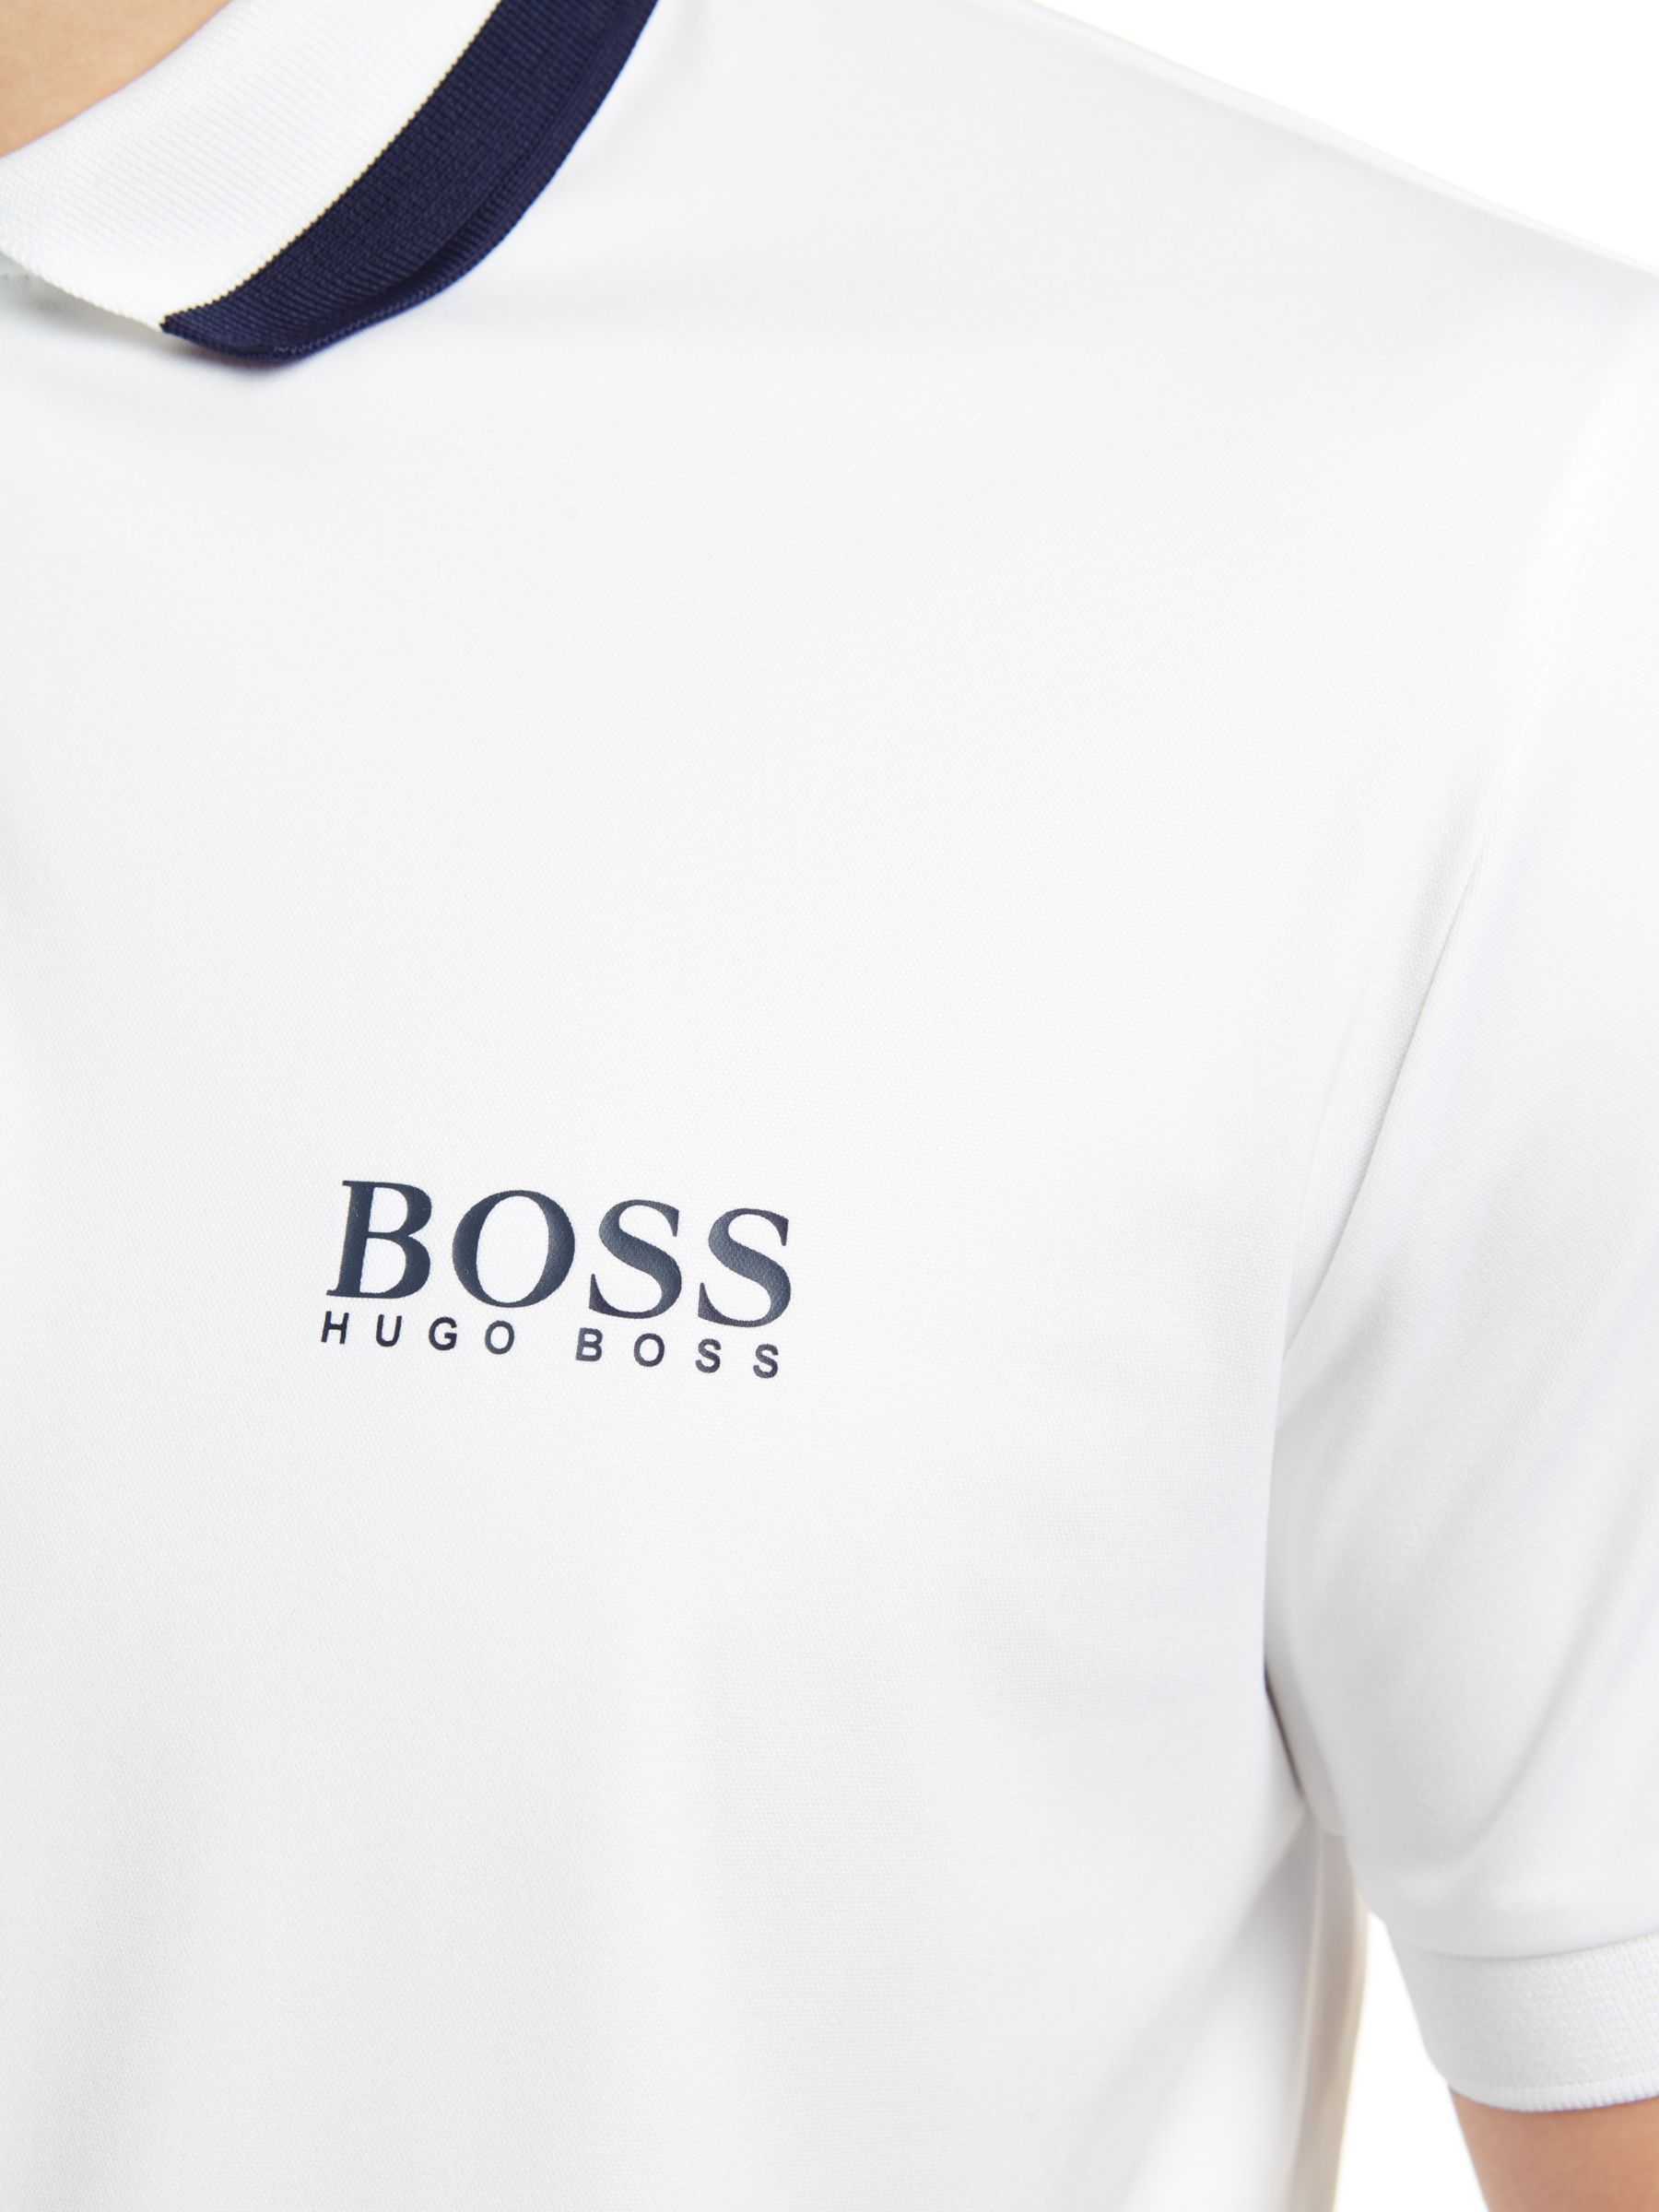 hugo boss golf t shirt